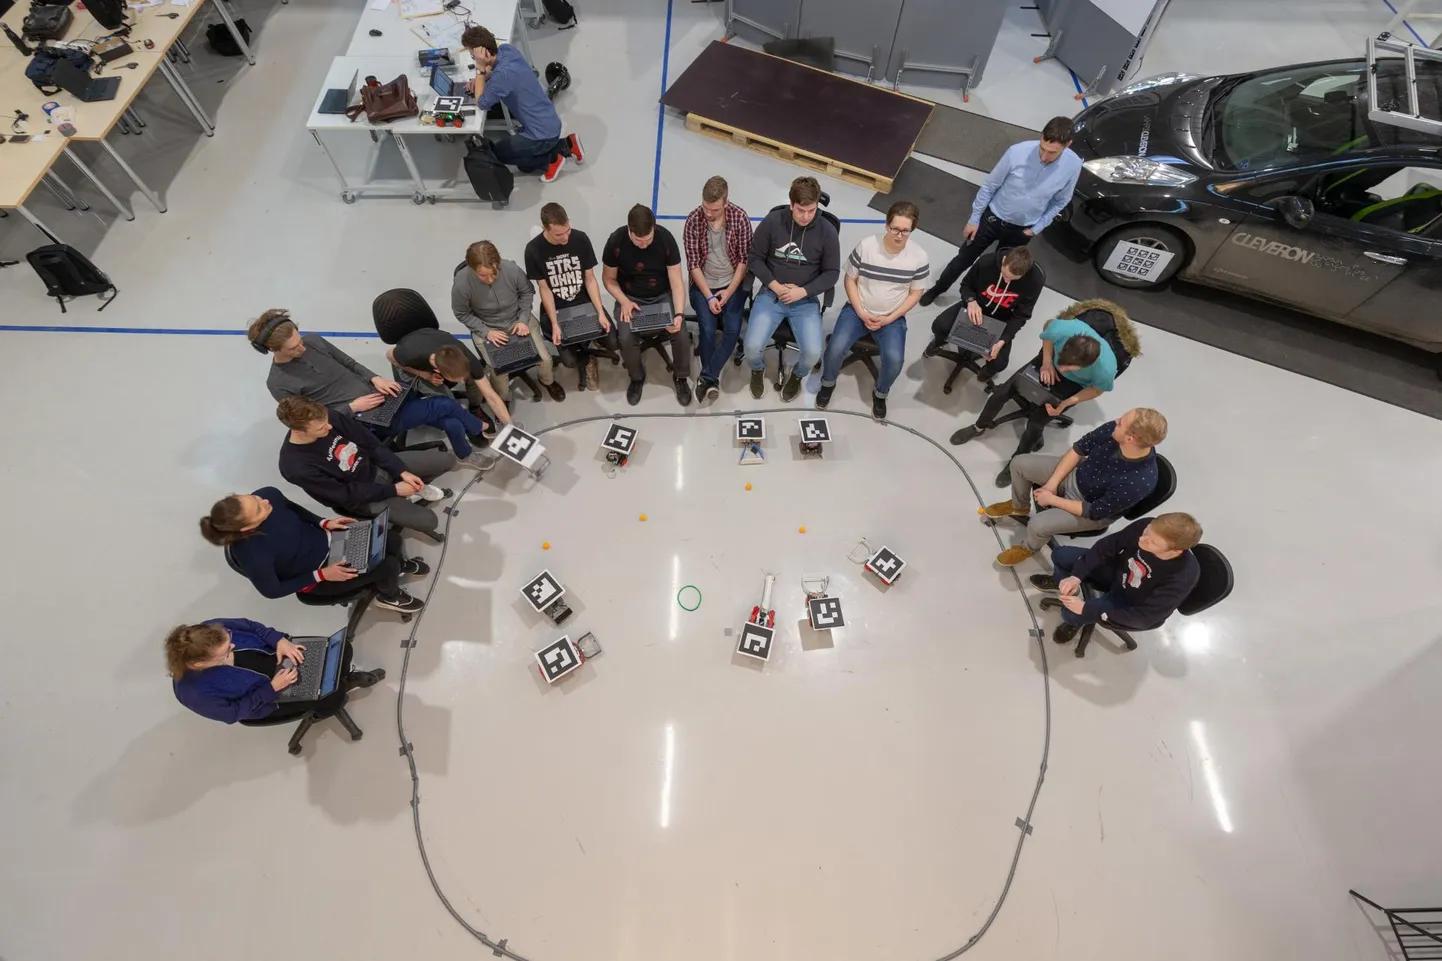 Cleveroni akadeemia esimene kursus eelmise aasta jaanuaris. Tudengite esimese semestri ülesanne oli ehitada robot, mis püüaks ühelt mahamärgitud platsilt viis lauatennisepalli ja viiks need teisele platsile.